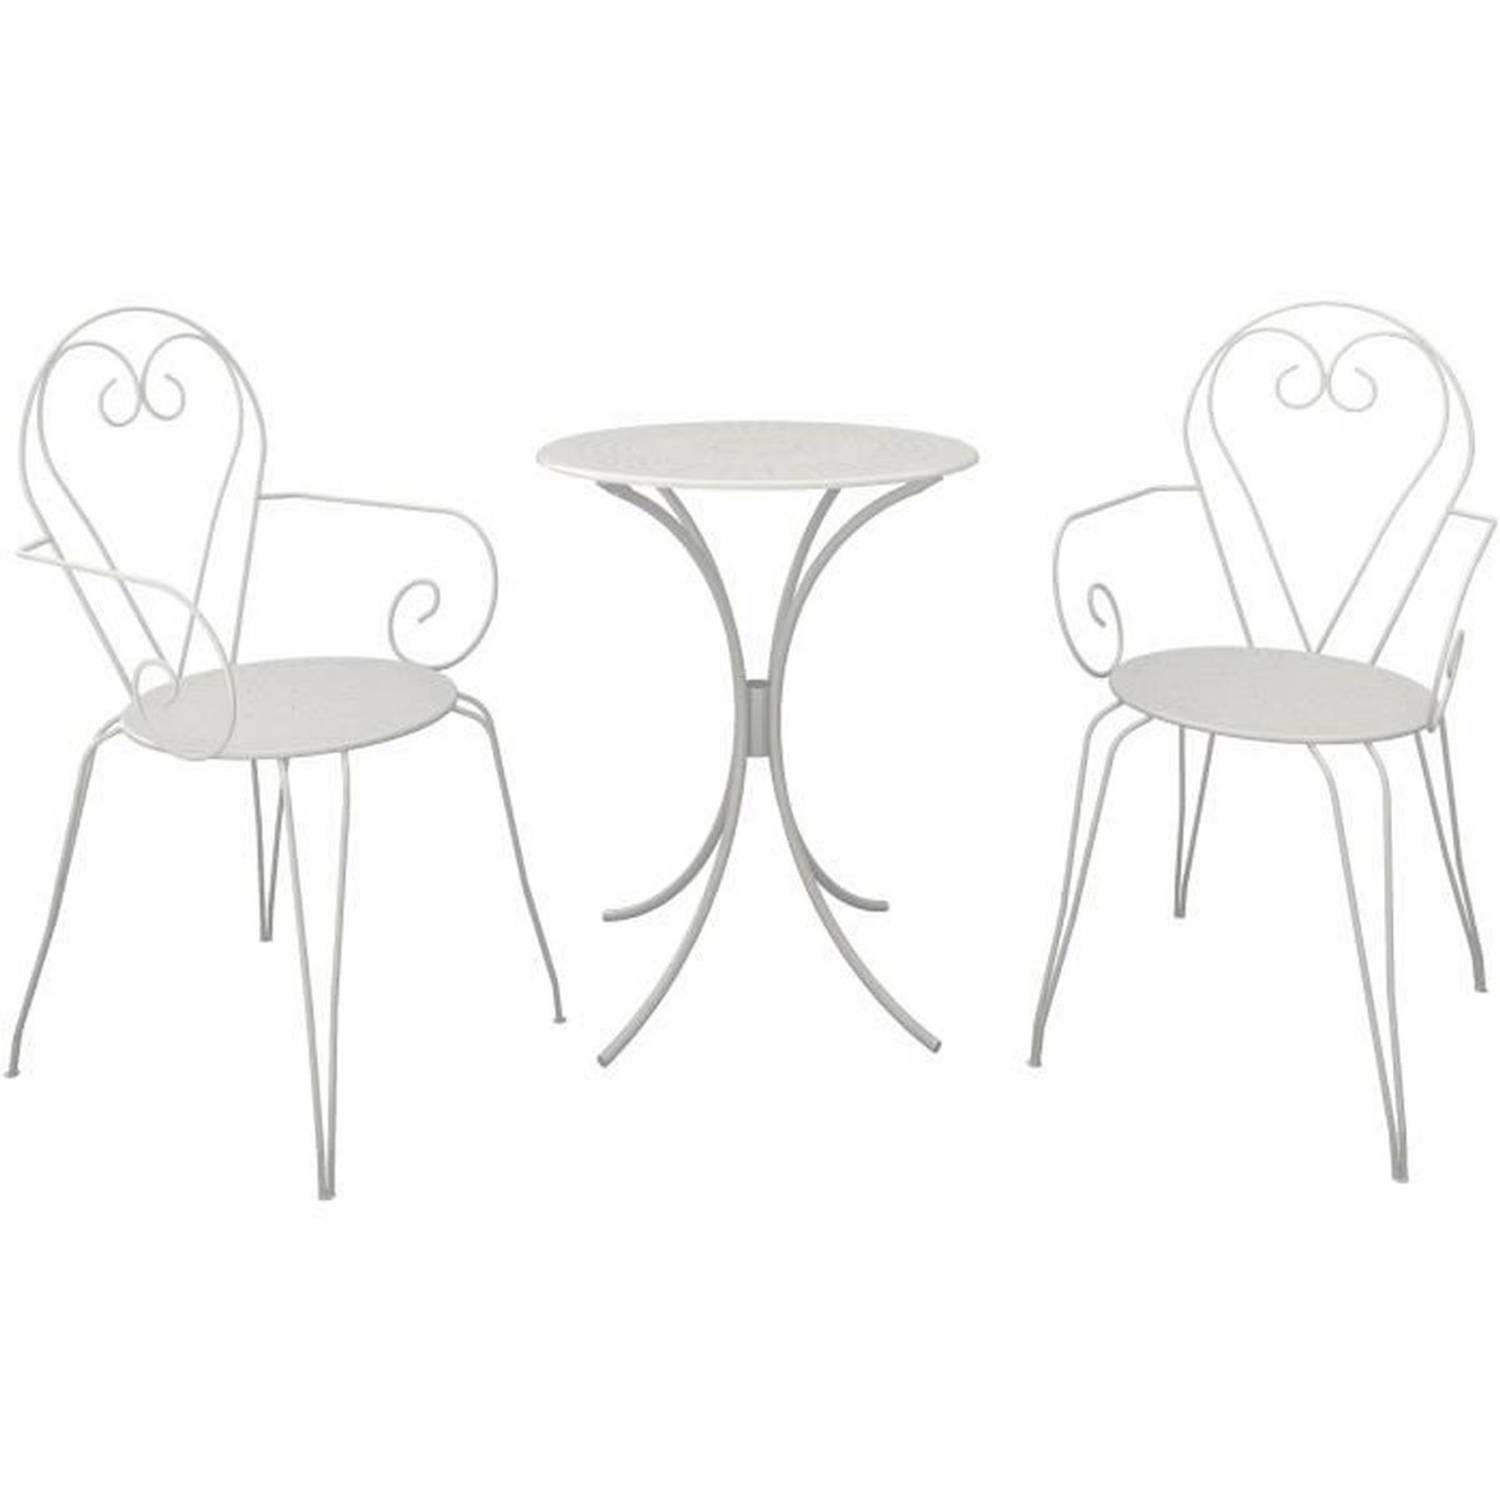 Romantisch smeedijzeren tuintafelset van 60 cm met 2 fauteuils wit